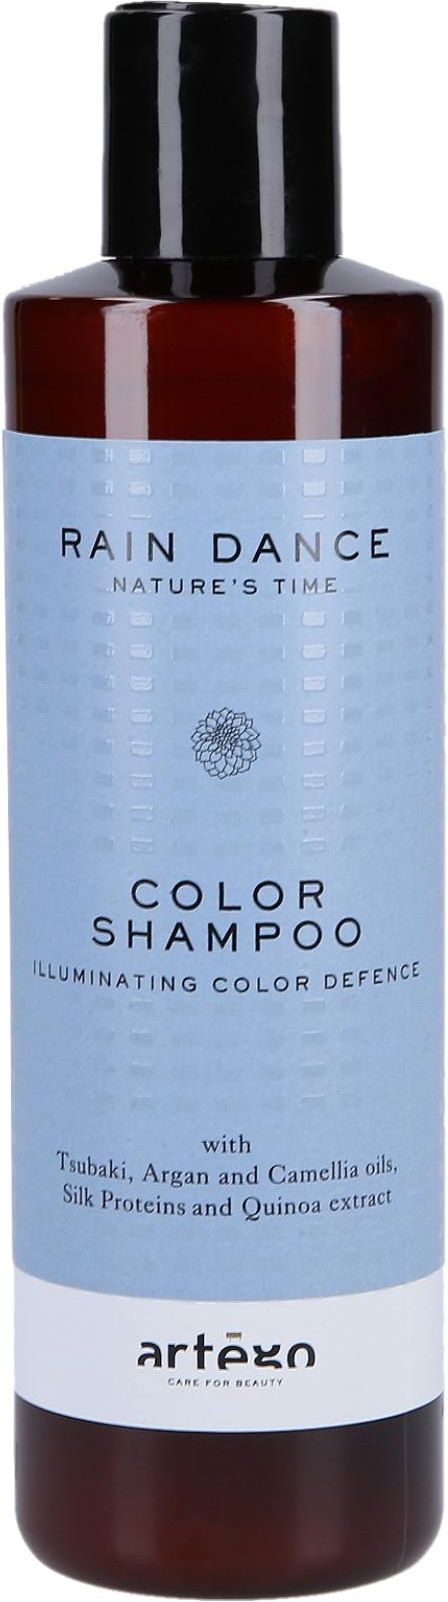 szampon artego do włosów farbowanych ceneo h